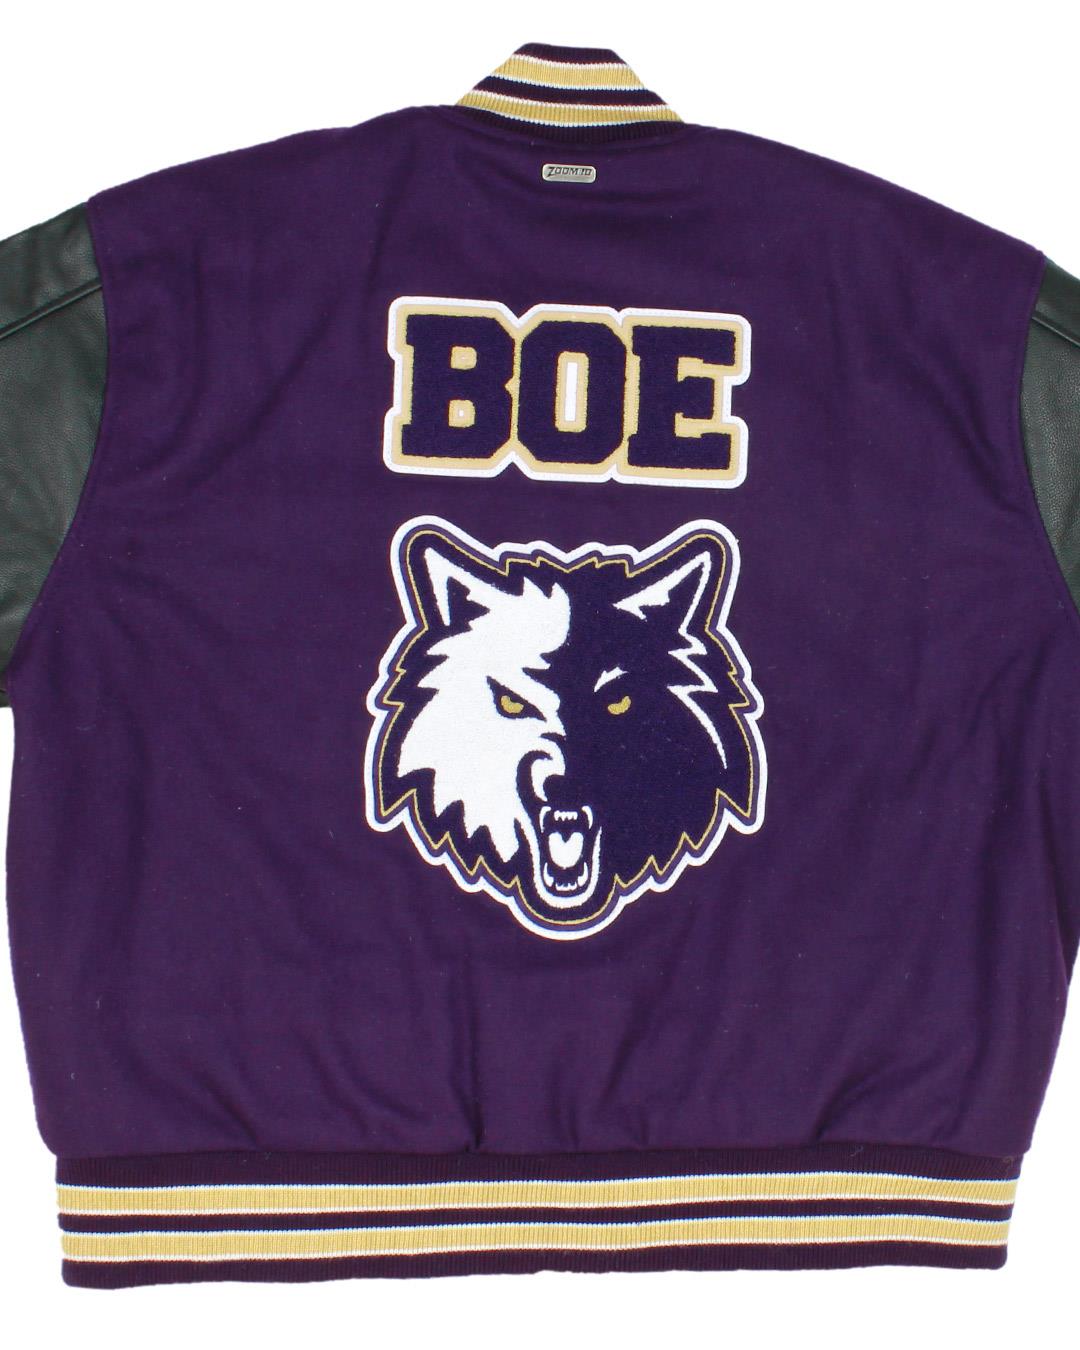 Goldendale High School Timberwolves Letter Jacket, Goldendale WA - Back